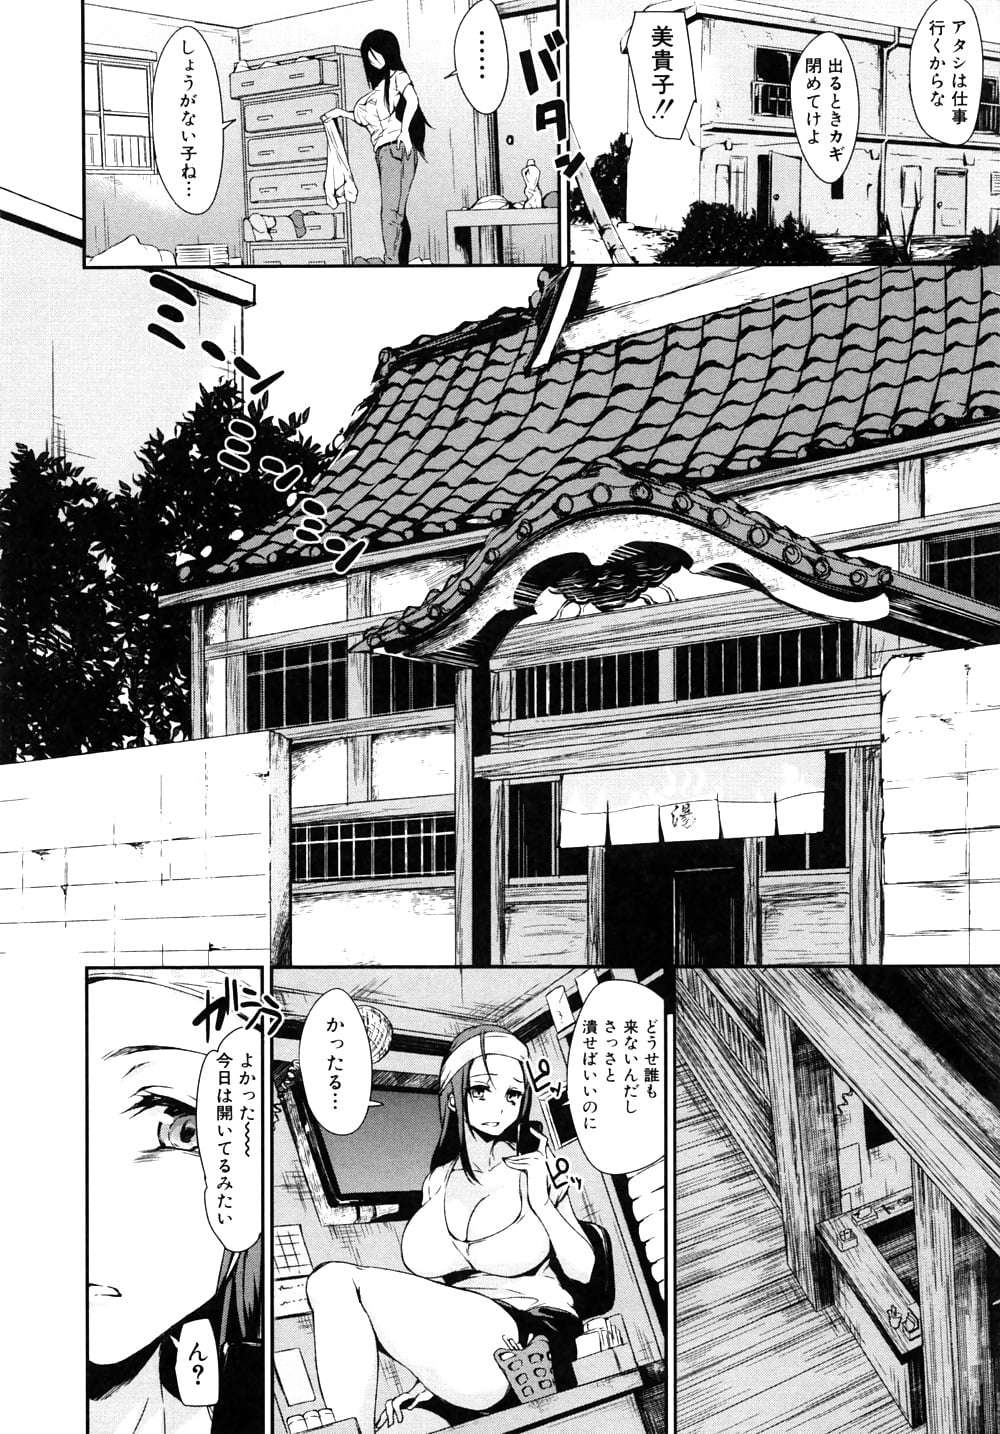 manga 27